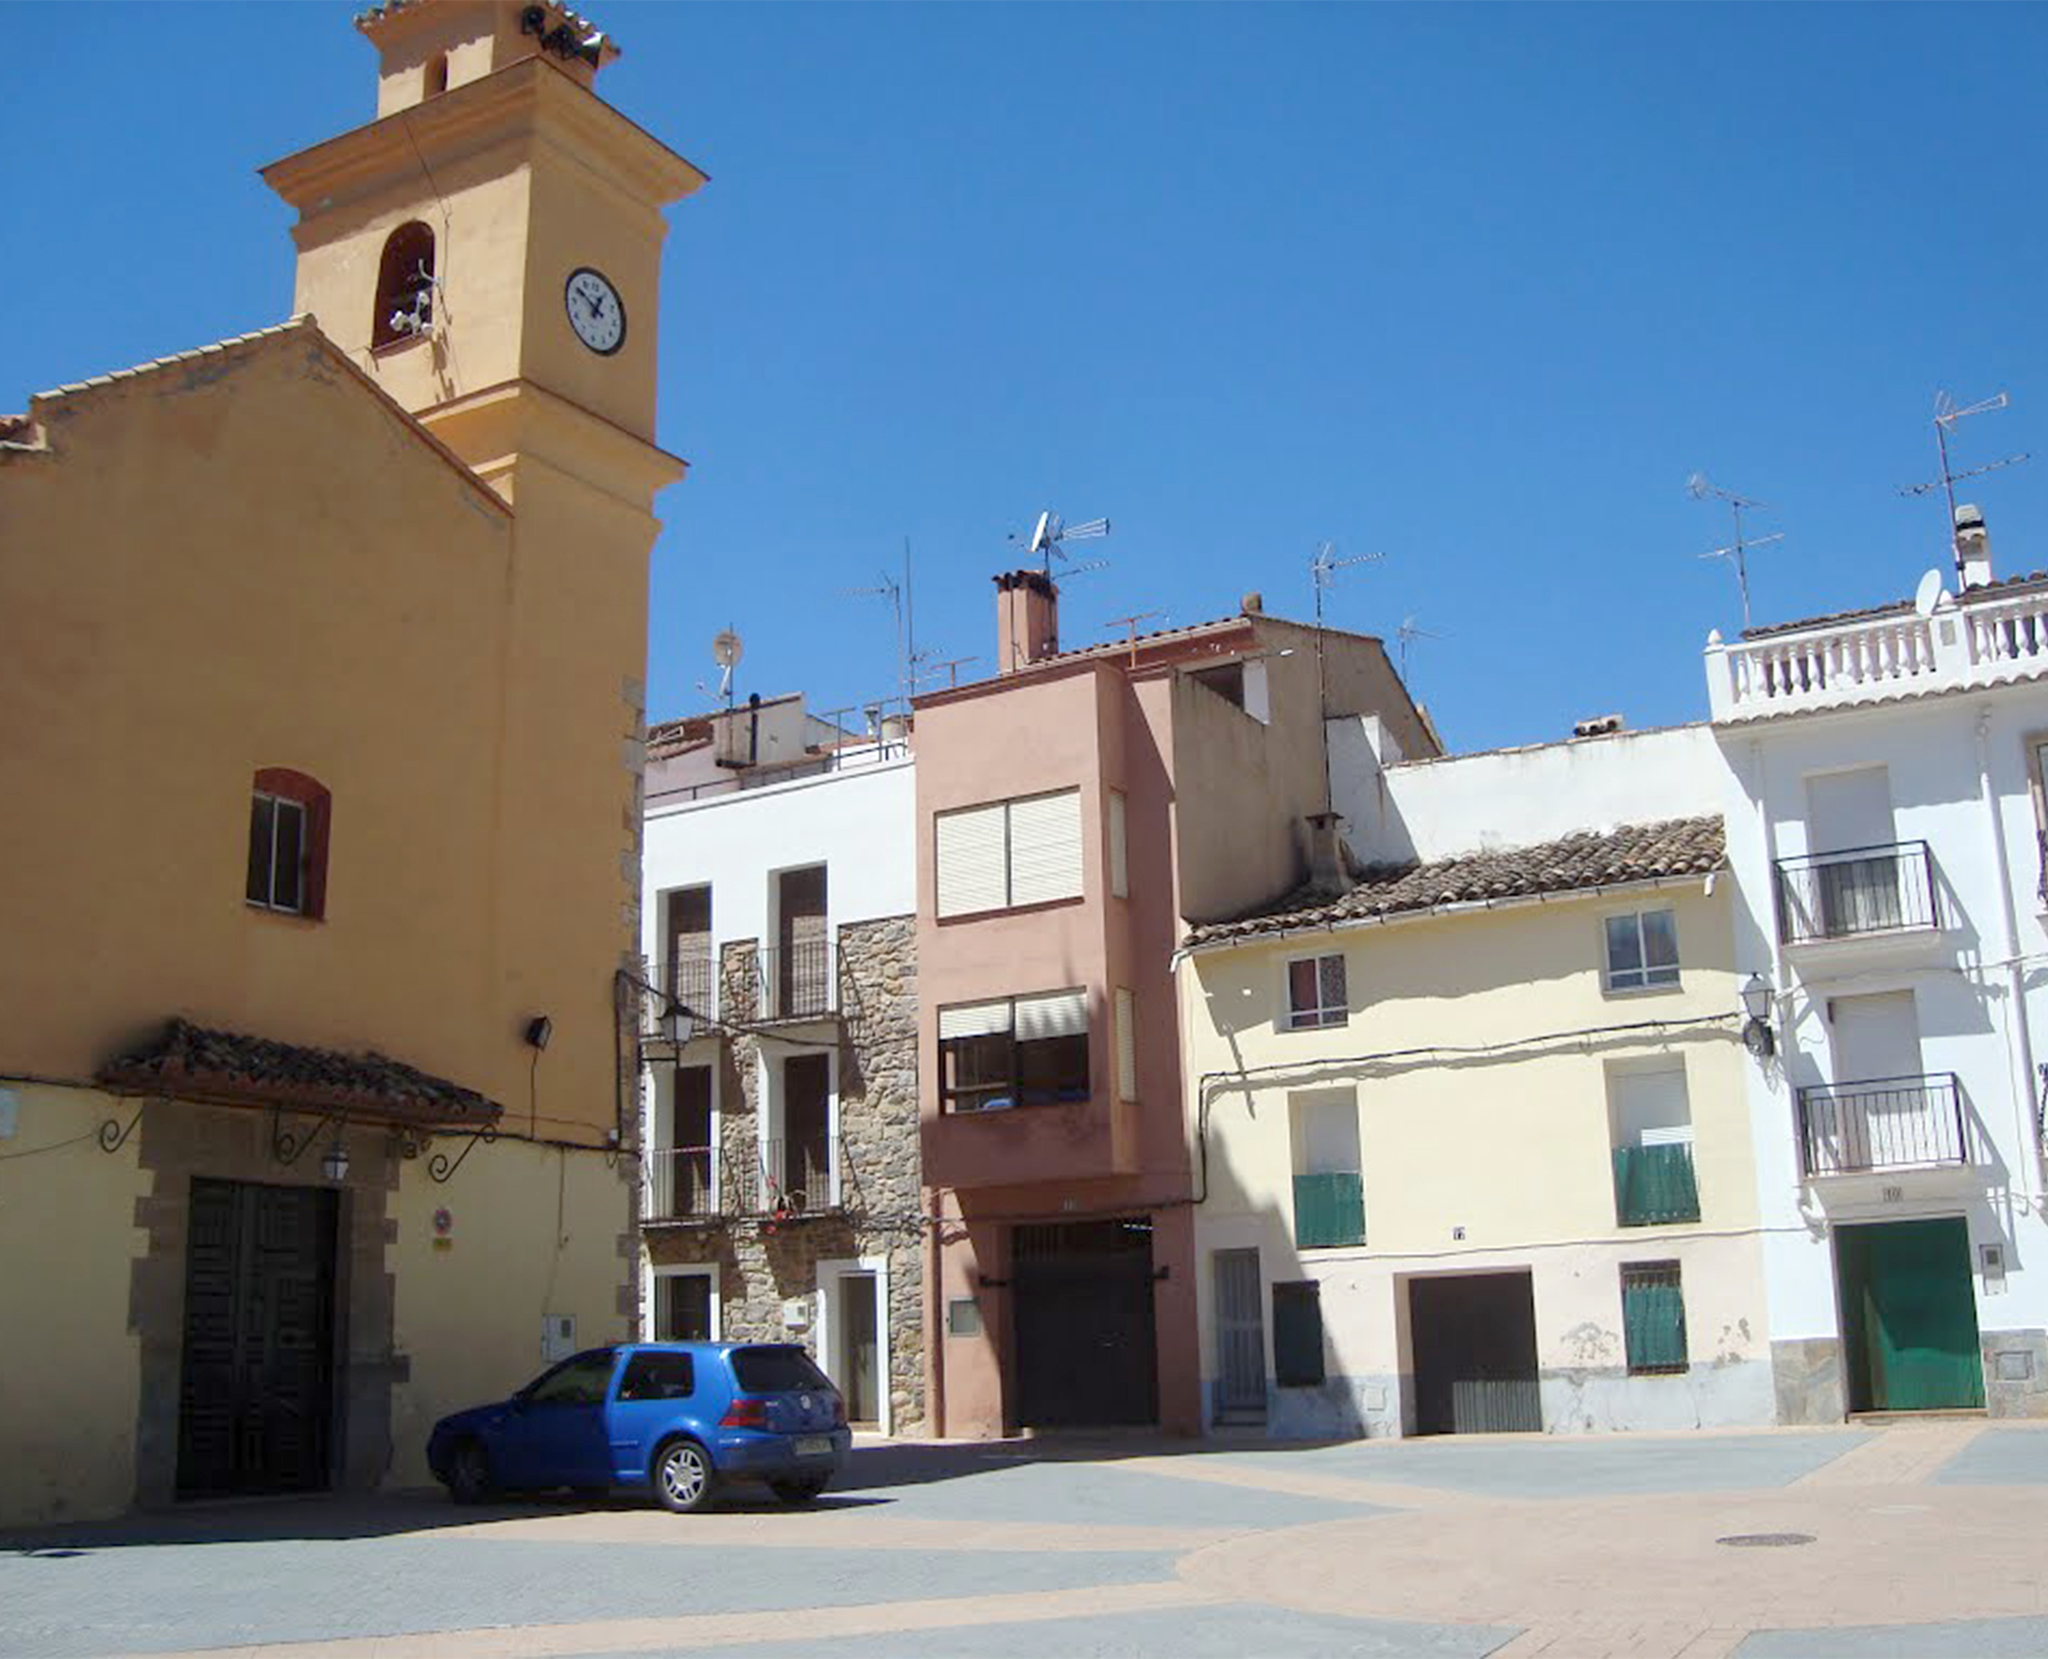 El Plan de Ordenacin Pormenorizada insta a preservar la arquitectura de la localidad de Torrechiva.